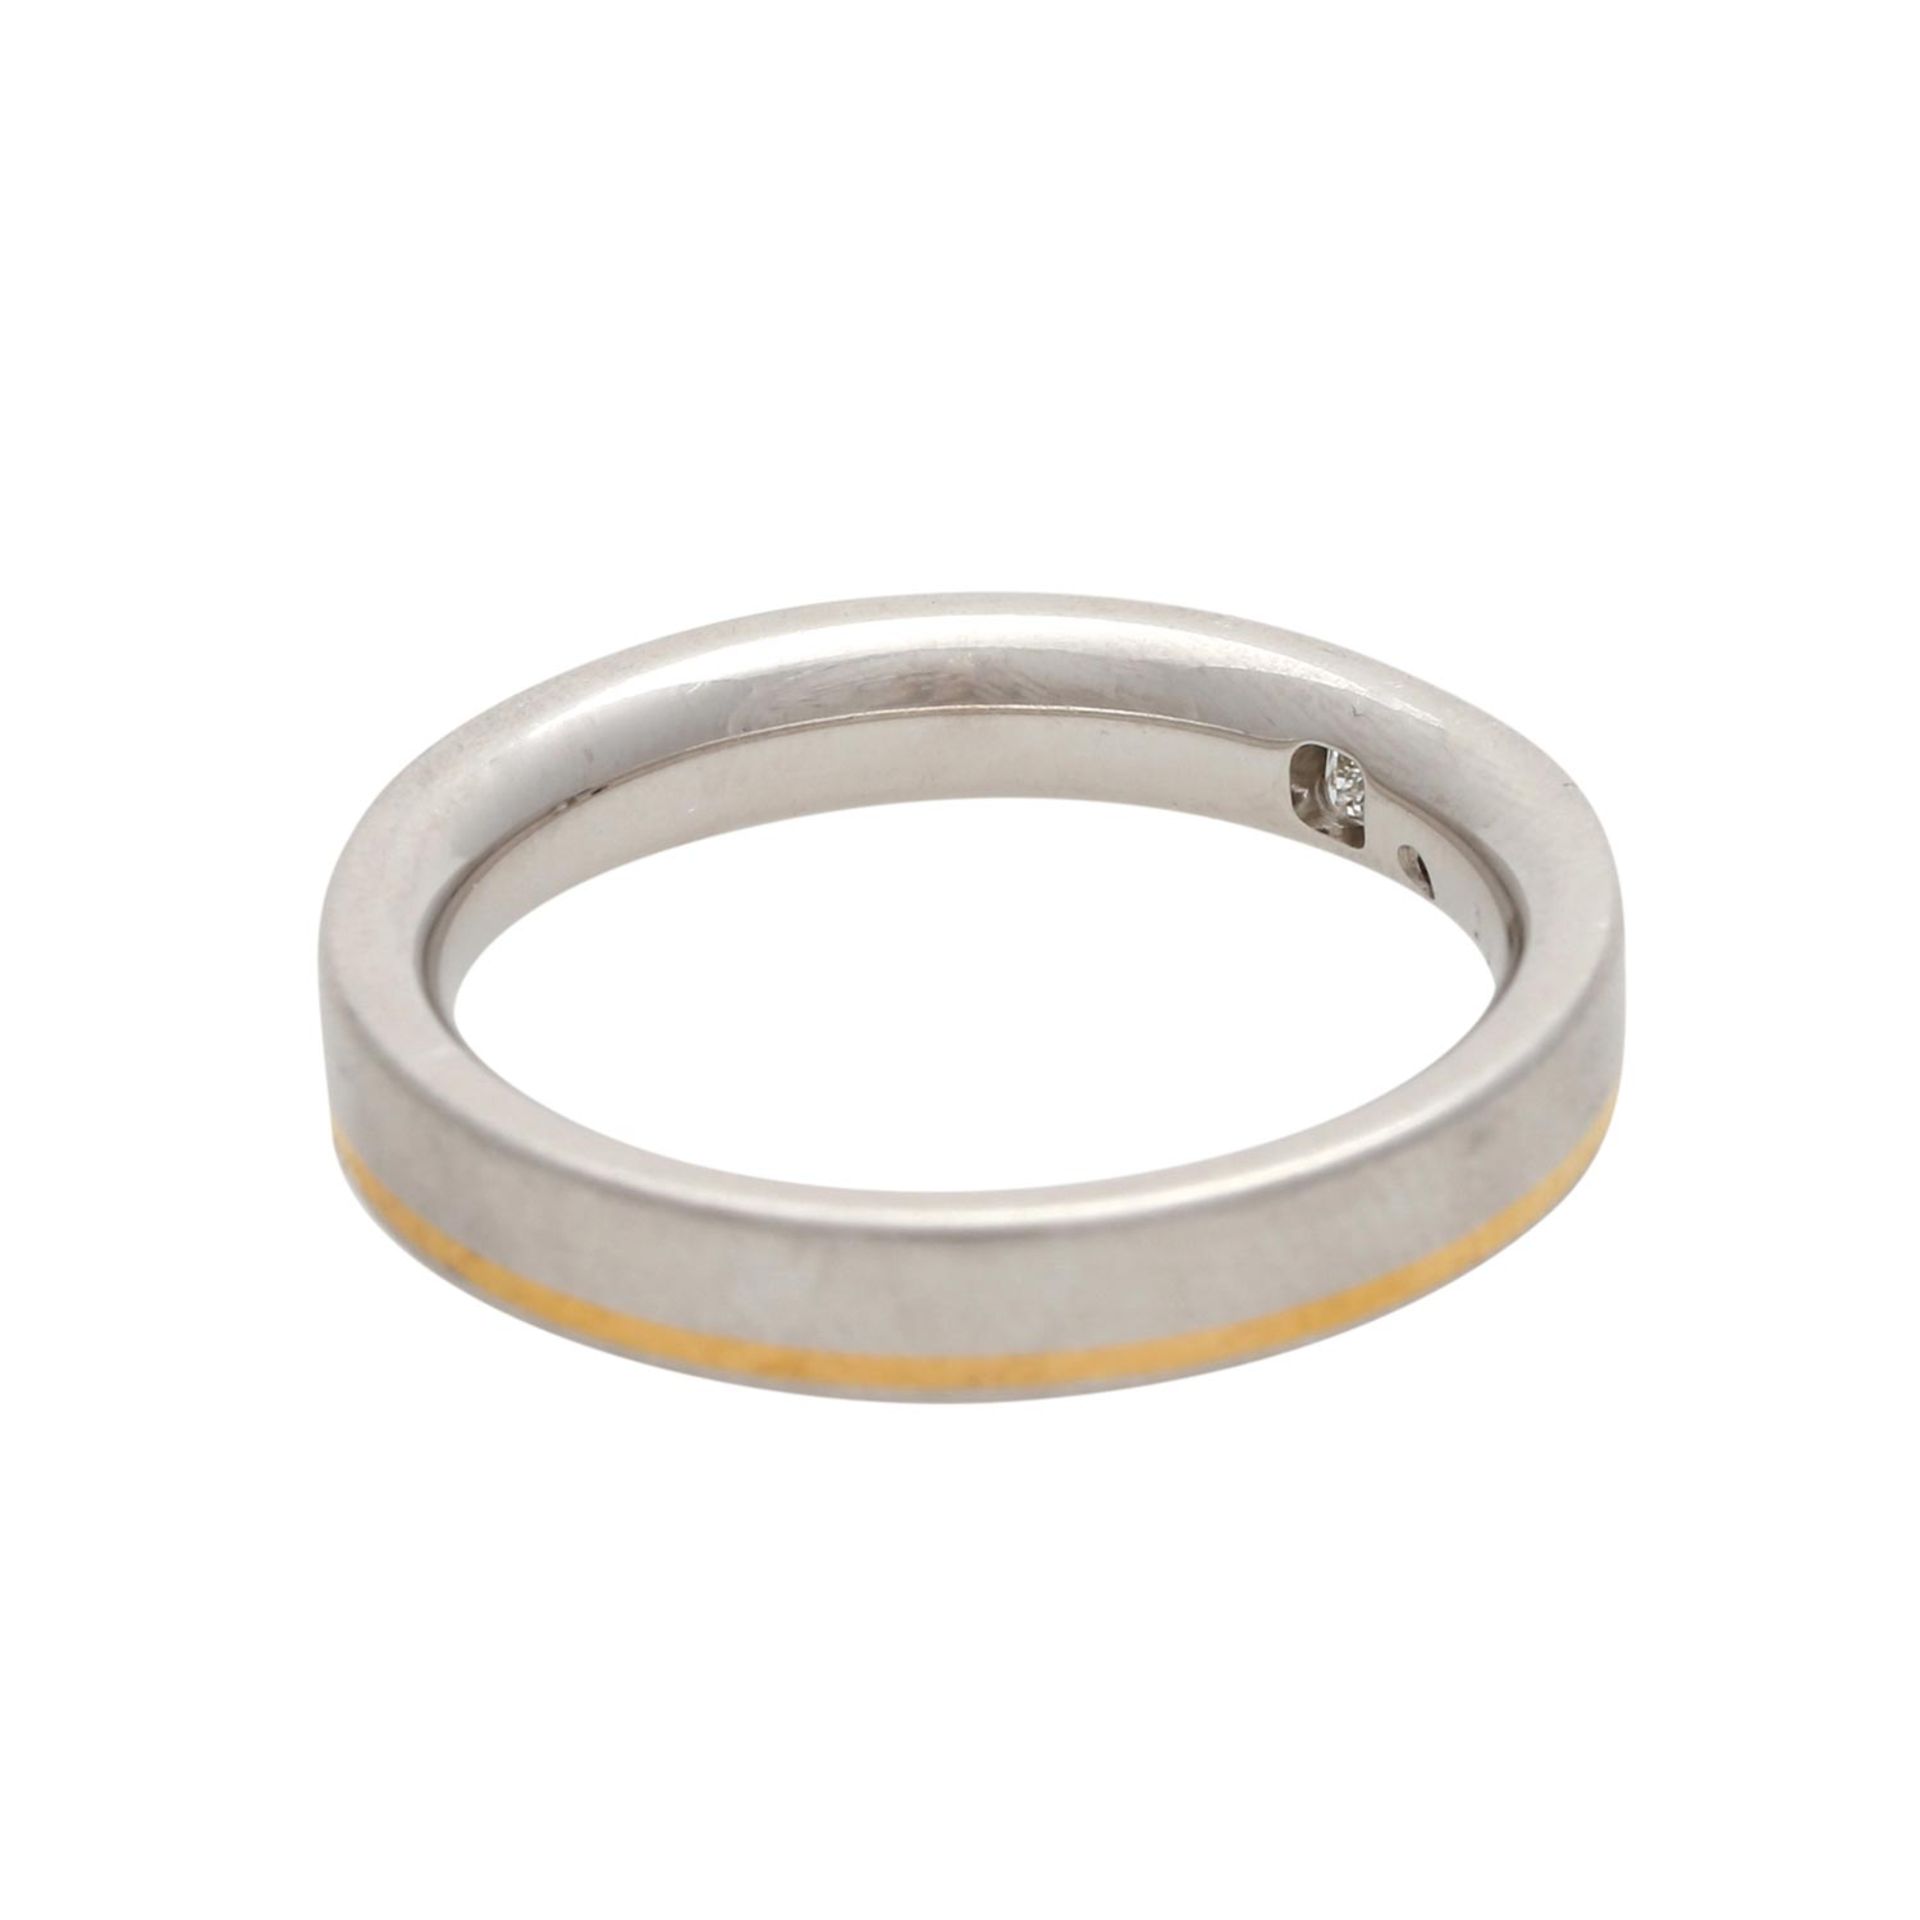 Ring mit 2 Diamanten, 0,16 ct, punziert, Platin, 12,8 g, mit Goldlinie, ohne Gravur, - Bild 3 aus 4